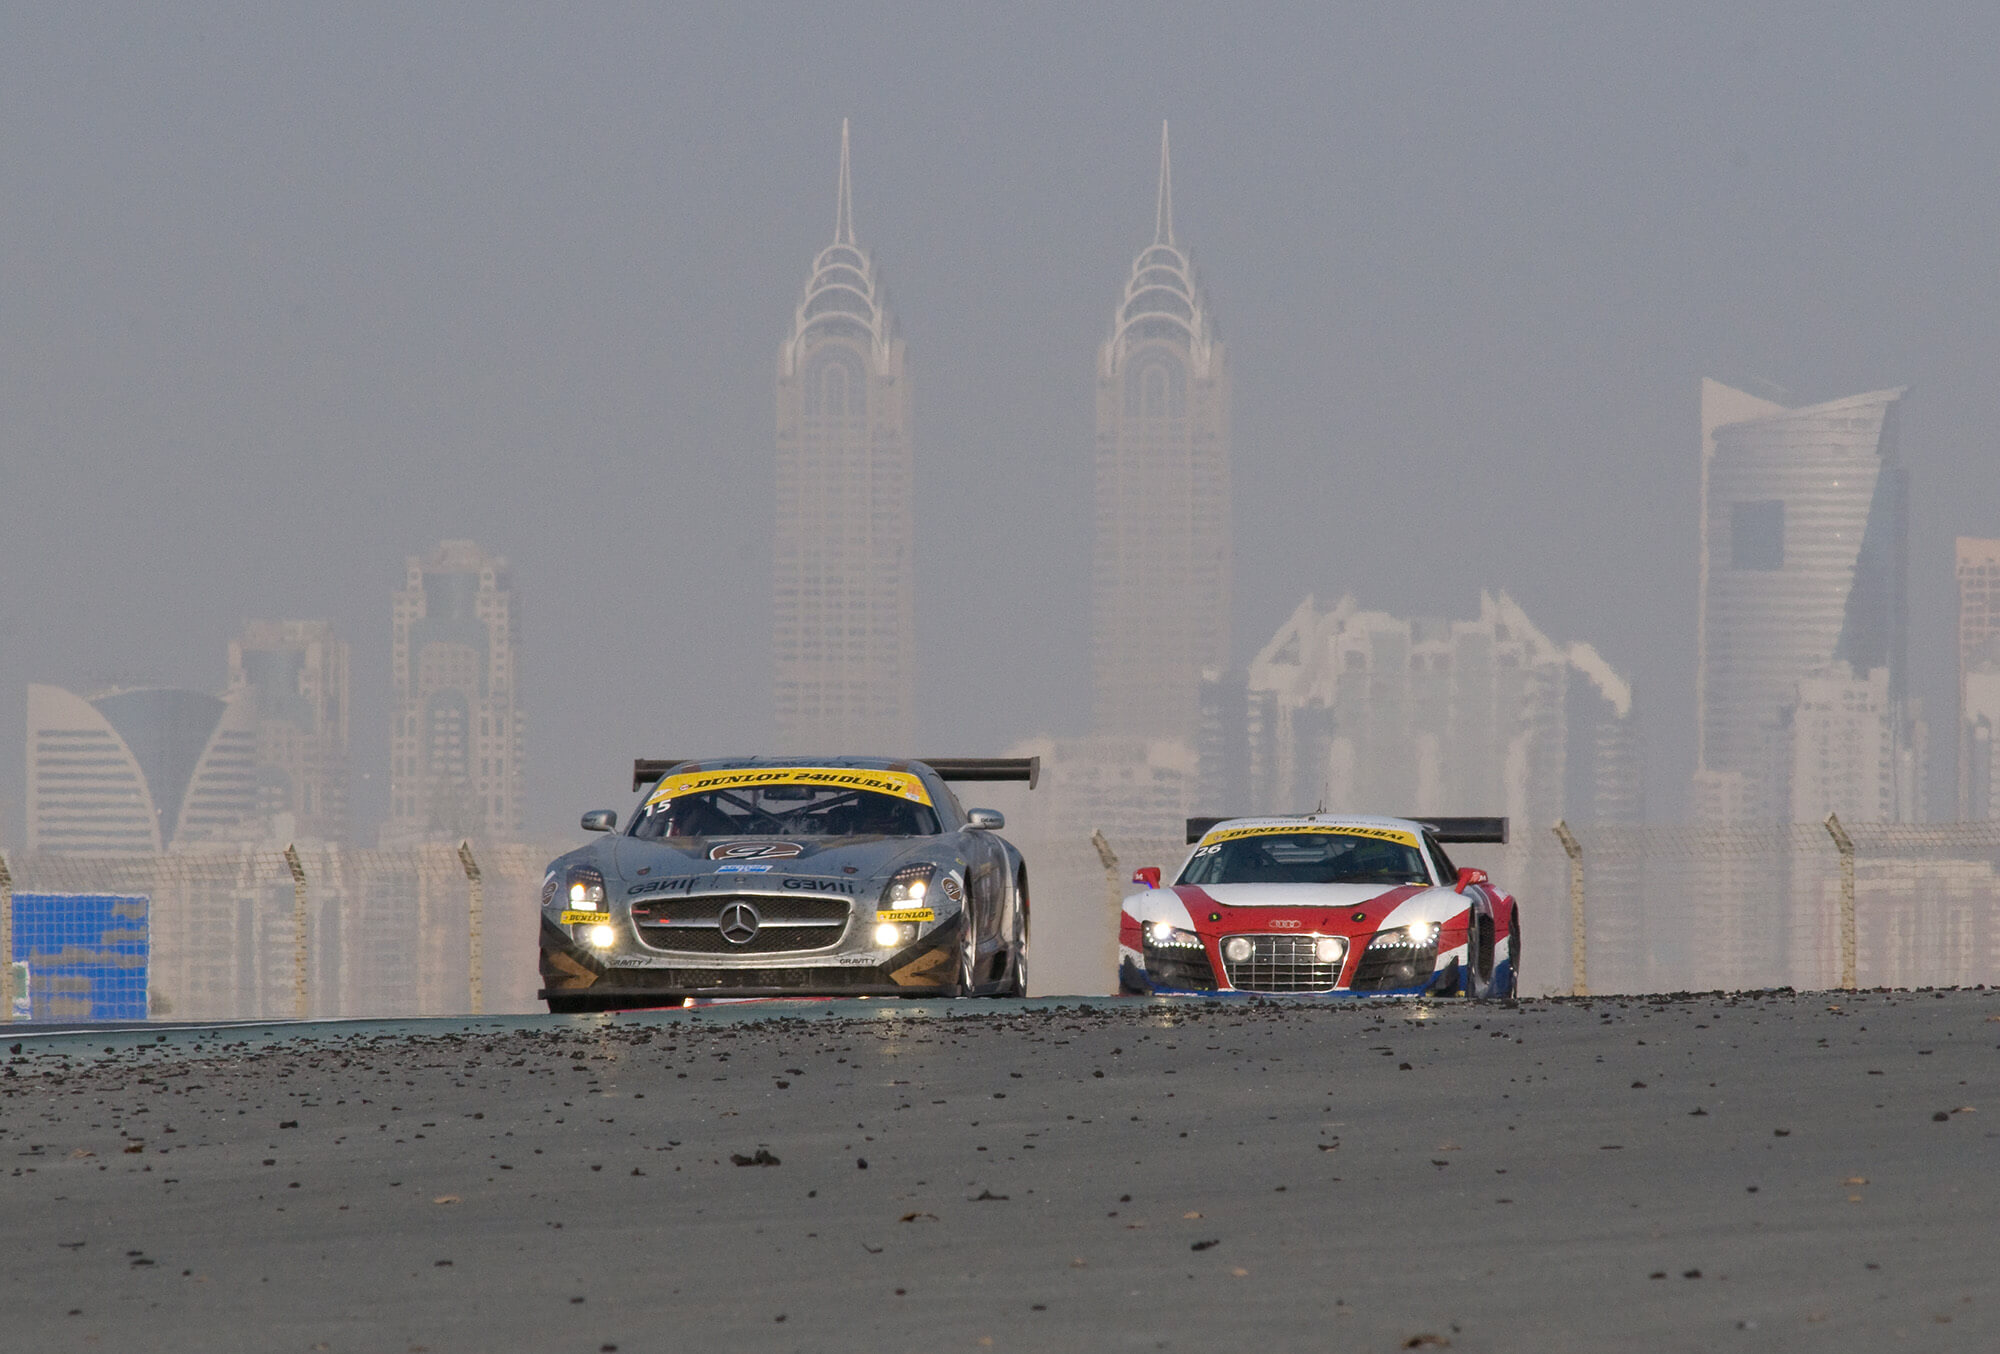 Dubai-Autódromo